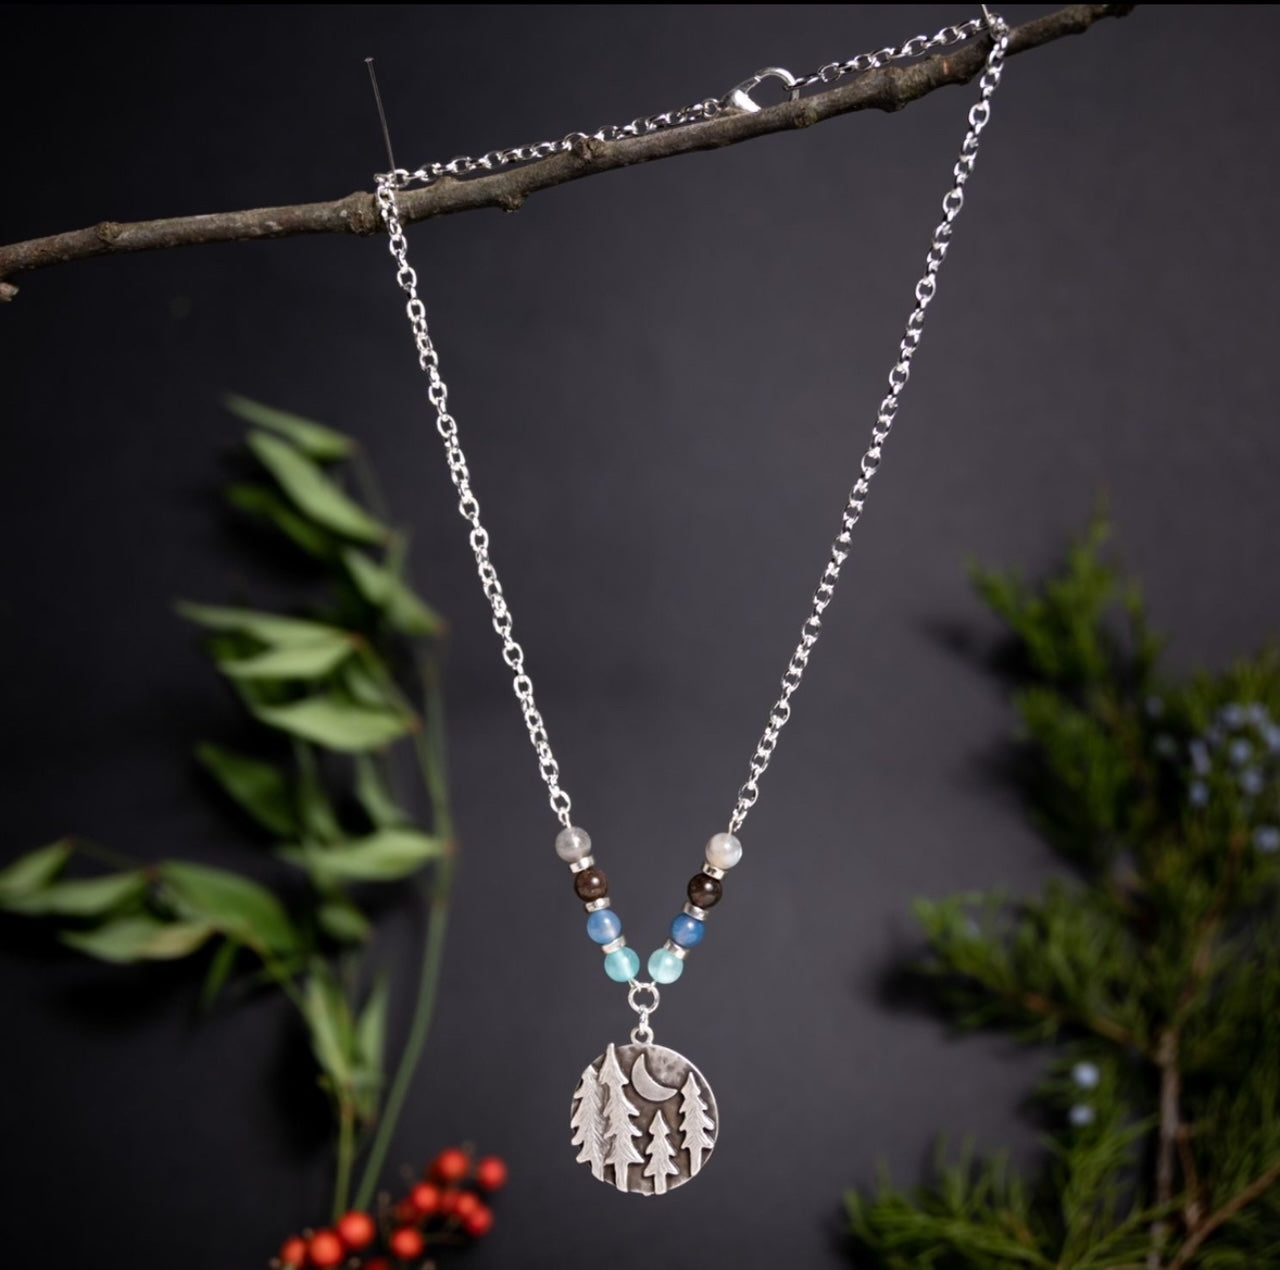 Moonlit Forest Pendant Necklace